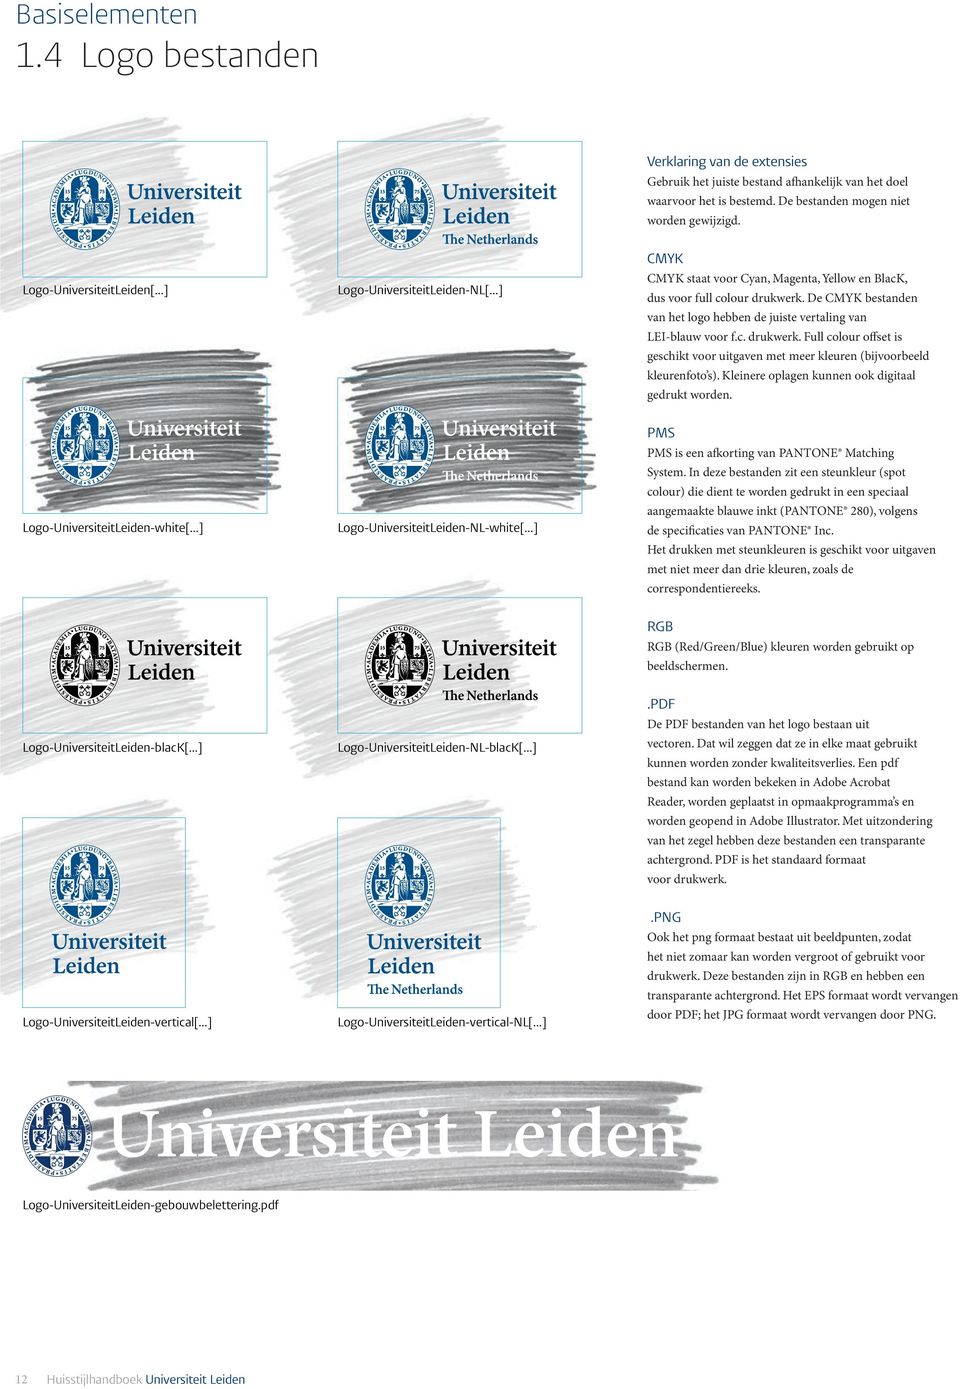 Logo-UniversiteitLeiden-NL-white[ ] Logo-UniversiteitLeiden-NL-blacK[ ] Logo-UniversiteitLeiden-vertical-NL[ ] Verklaring van de extensies Verklaring van de extensies Gebruik het juiste bestand